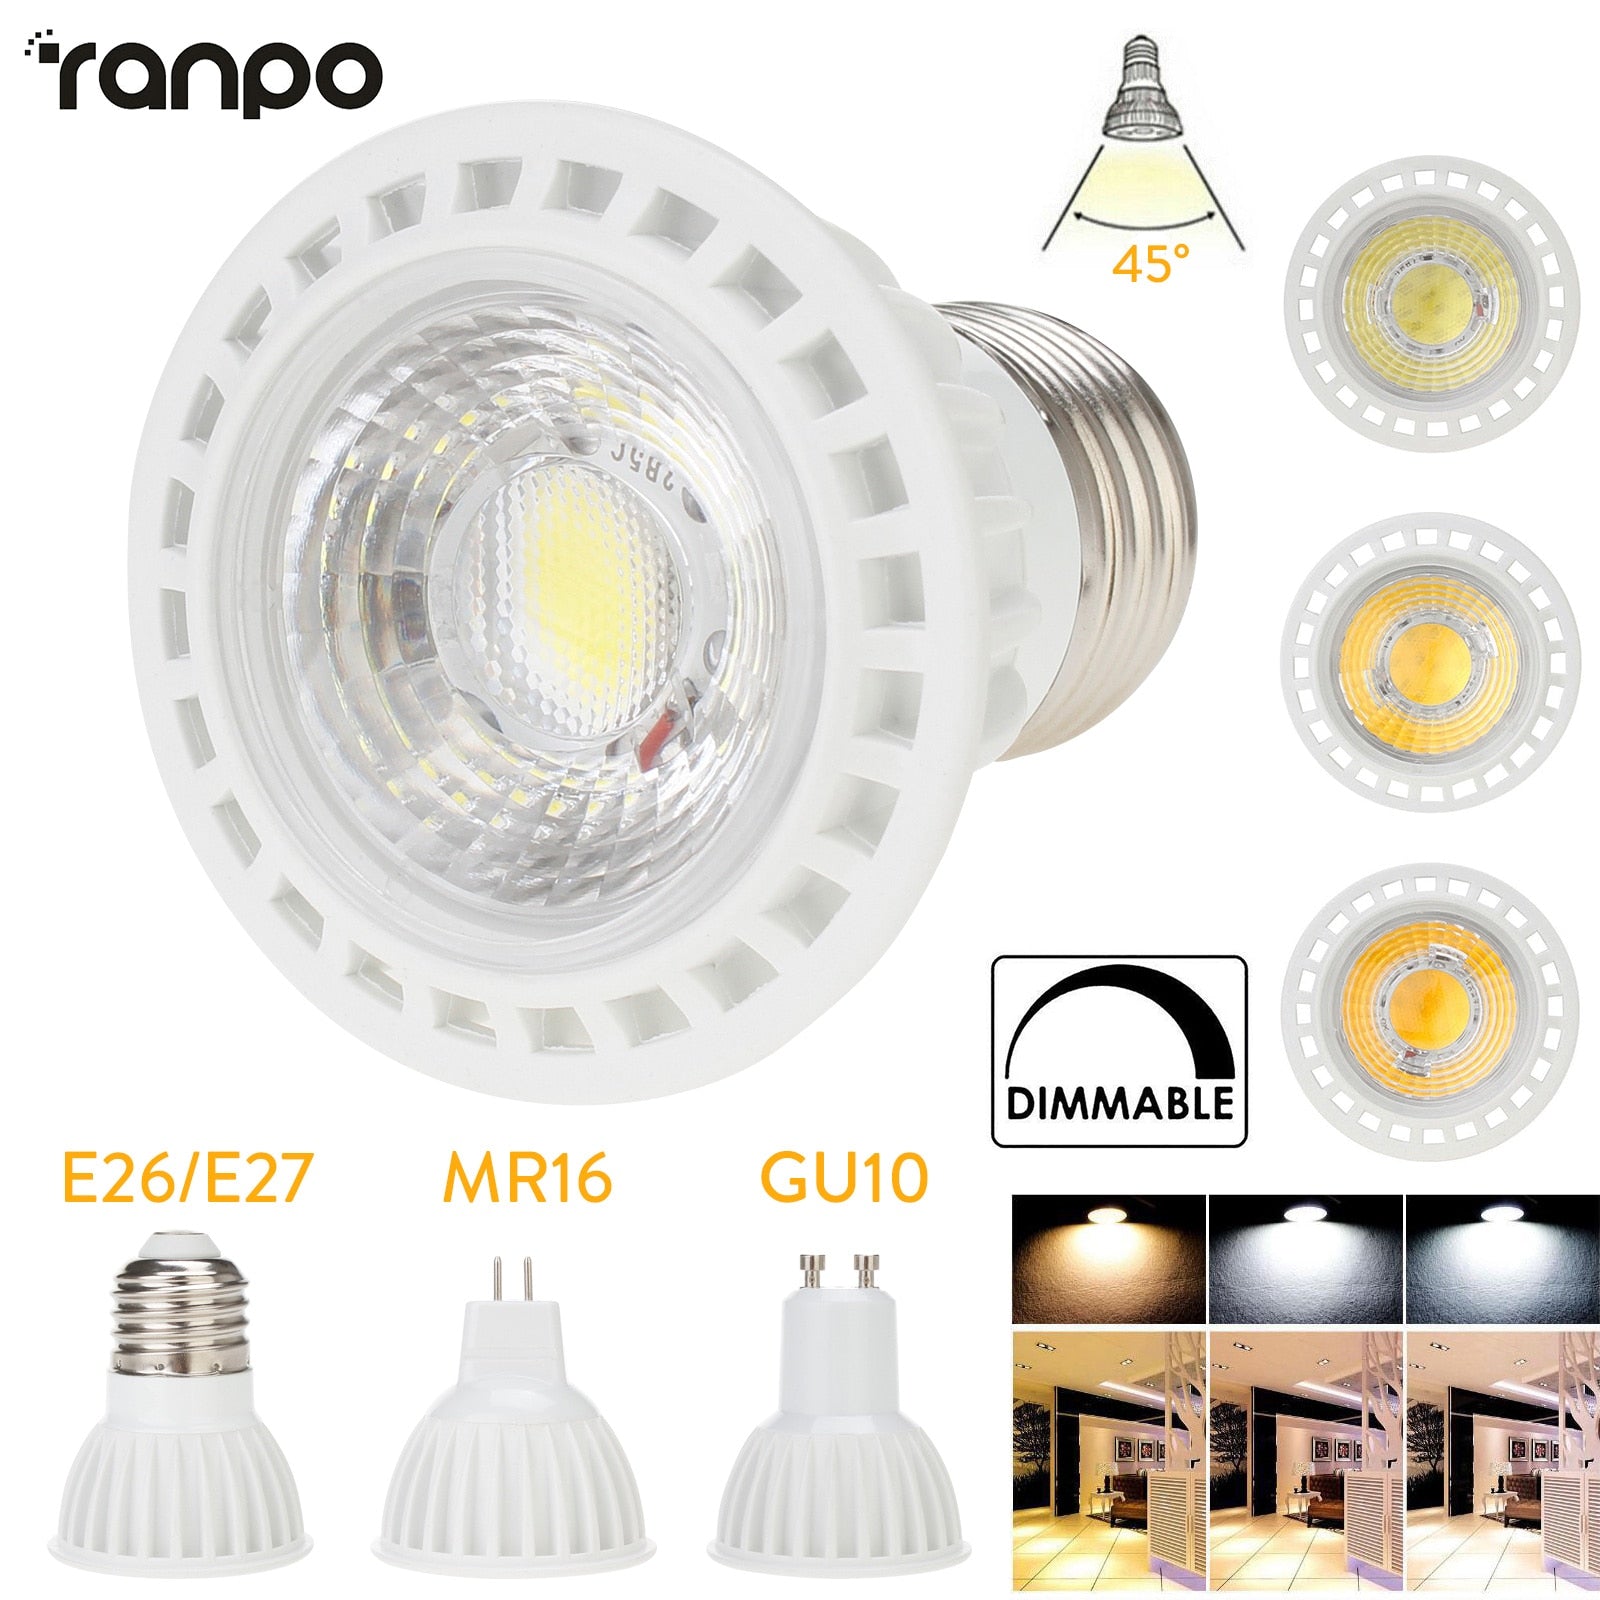 Dimmable LED Spotlight E26 E27 GU10 MR16 15W COB Light Bulbs 45° Beam Angle 110V 220V DC12V for Home Office Table Lamp Downlight